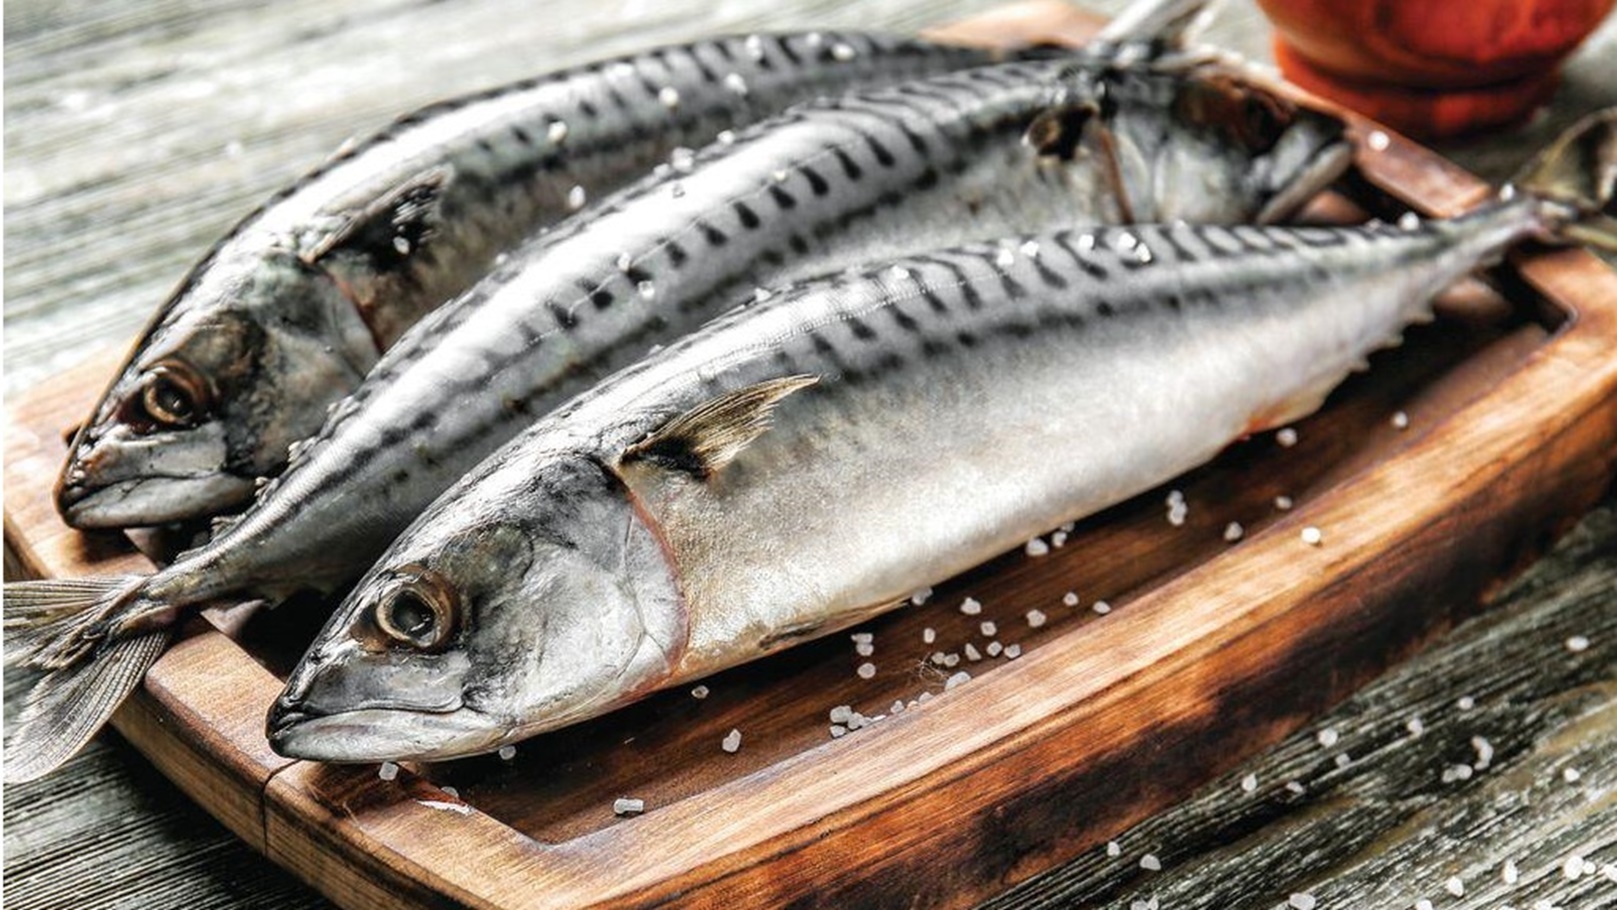 الحكومة تؤكد عدم رصد دخول أي أسماك مستوردة مشعة في الأسواق